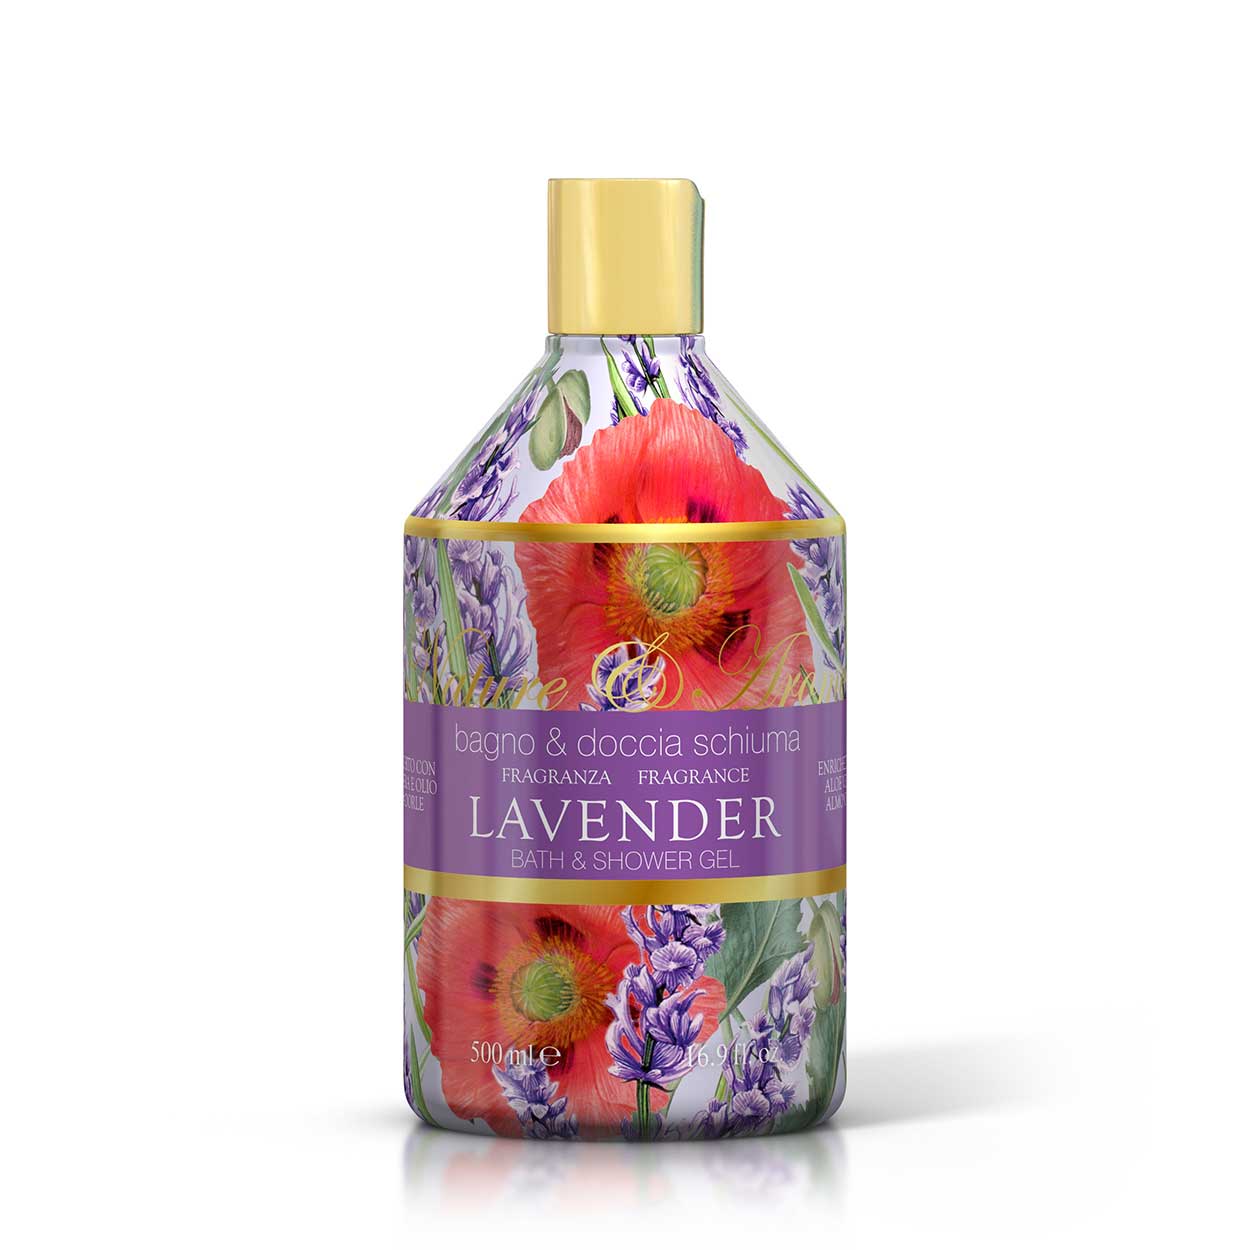 <b>Bagno docciaschiuma da 500 mL</b></br>Nature&Arome</br><i>Linea Lavender</i>